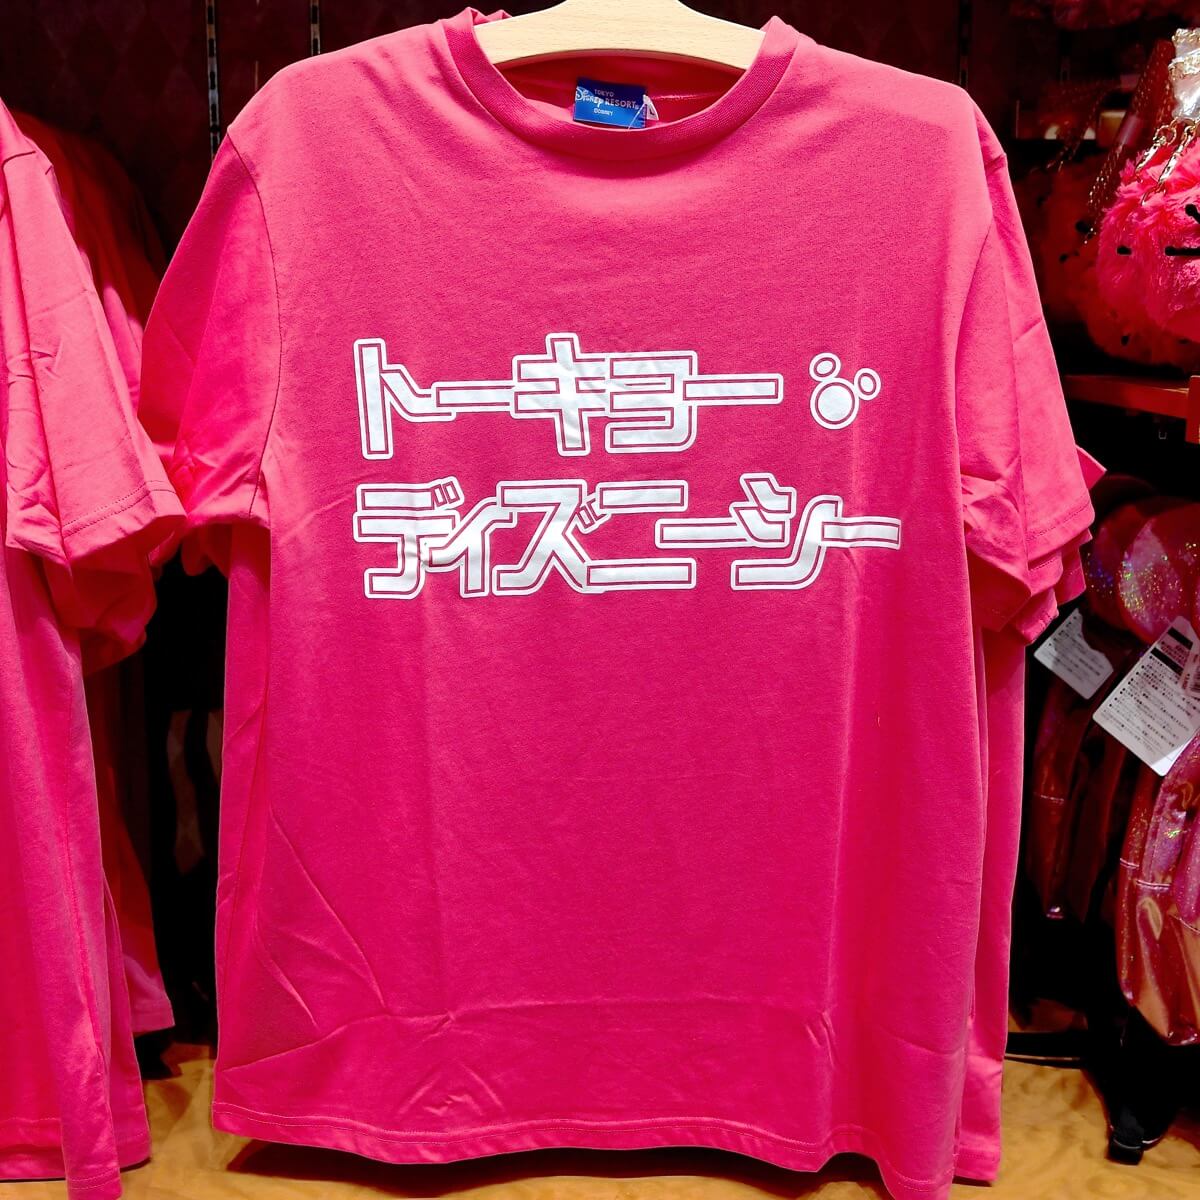 ミッキー ミニーメッシュtシャツ 赤 18春夏版 東京ディズニーランド Tシャツ パーカーまとめ